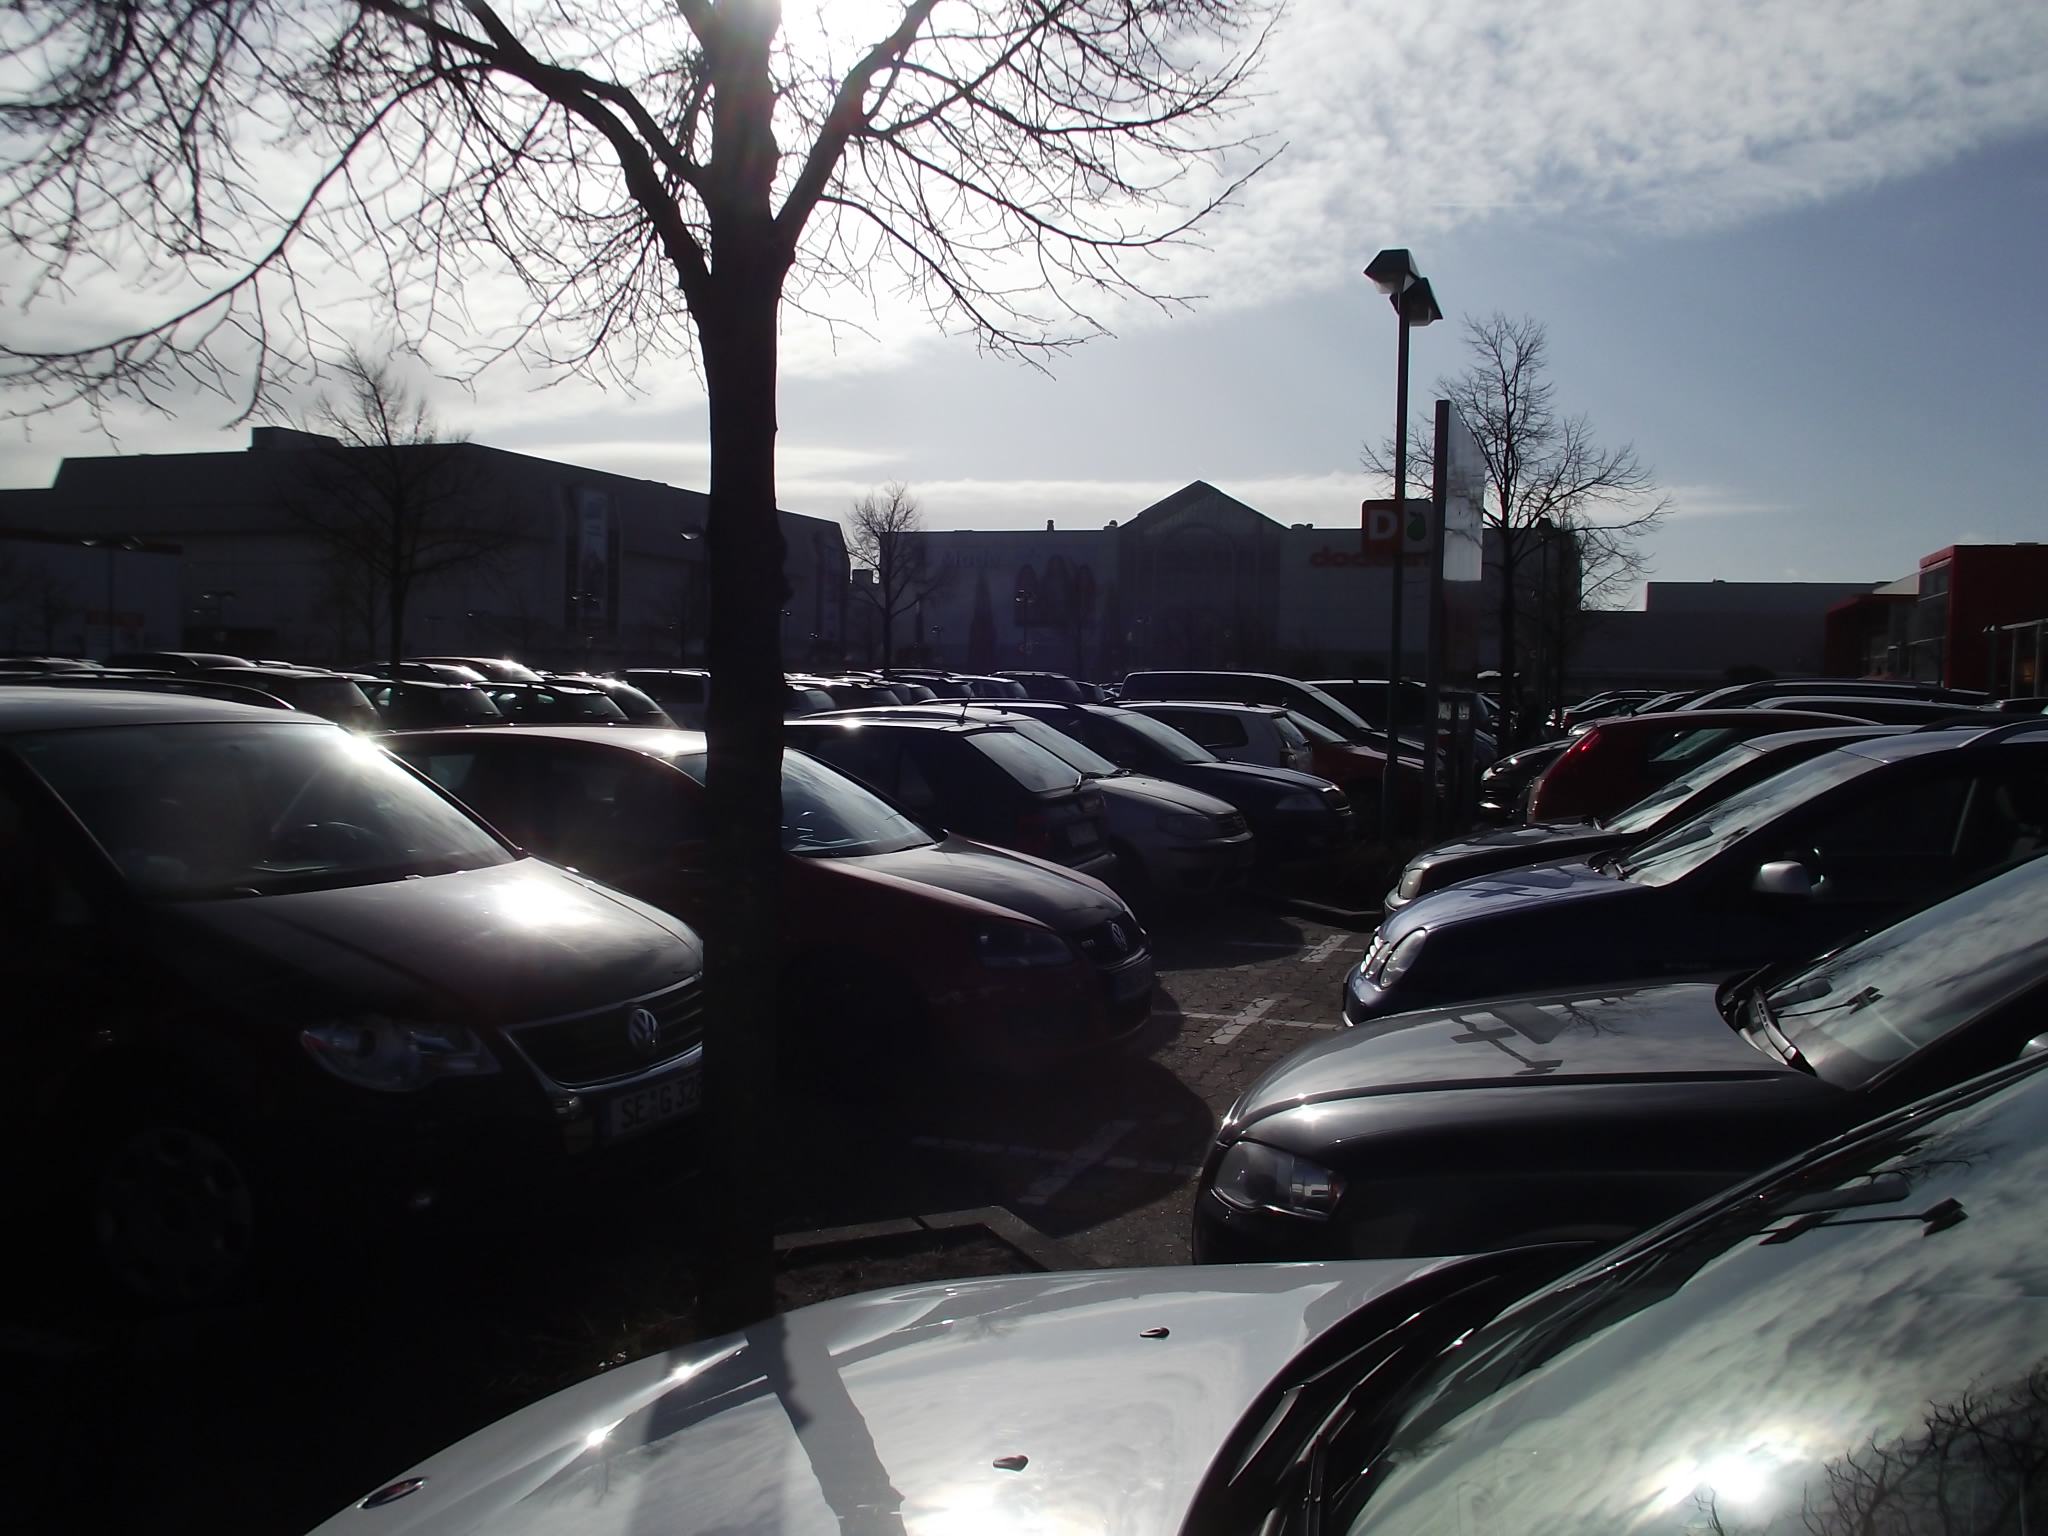 Parkplatz von Dodenhof am 25.2.2012 um 10:30 Uhr